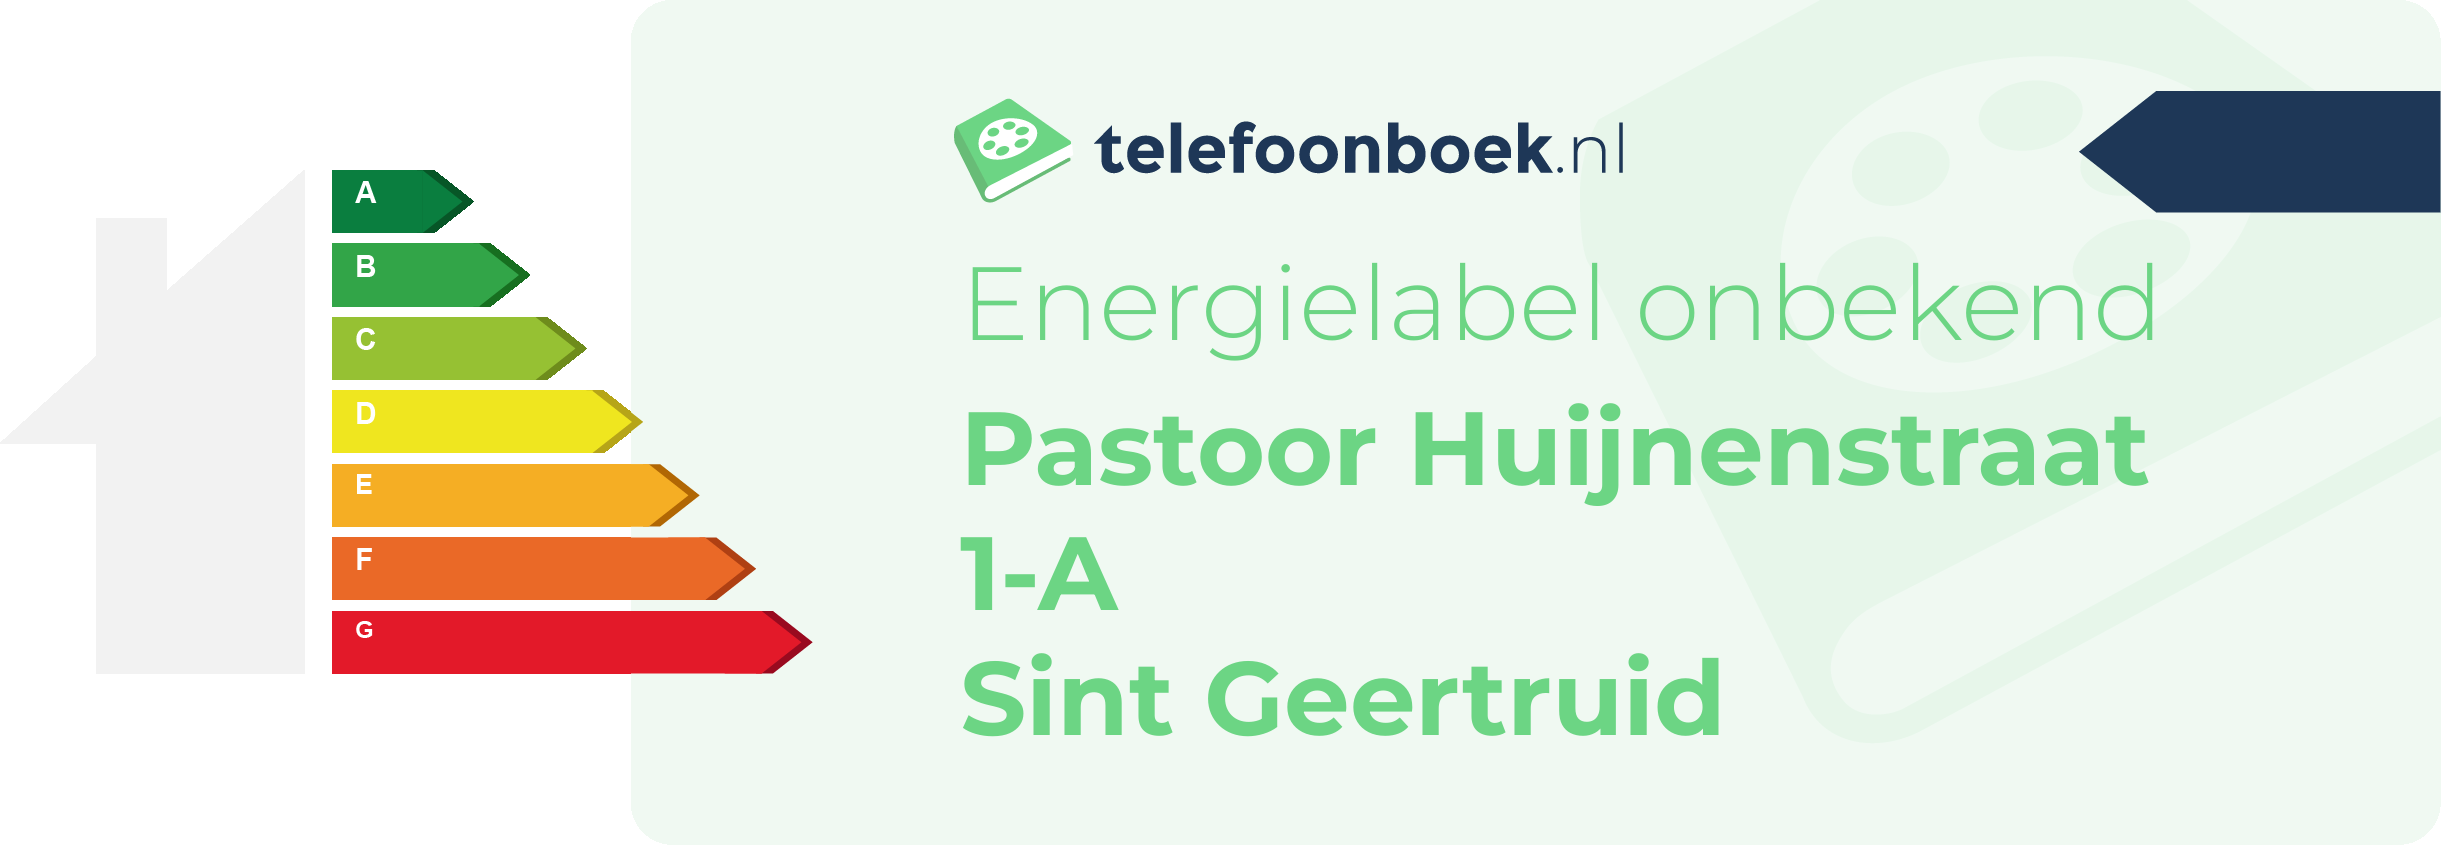 Energielabel Pastoor Huijnenstraat 1-A Sint Geertruid